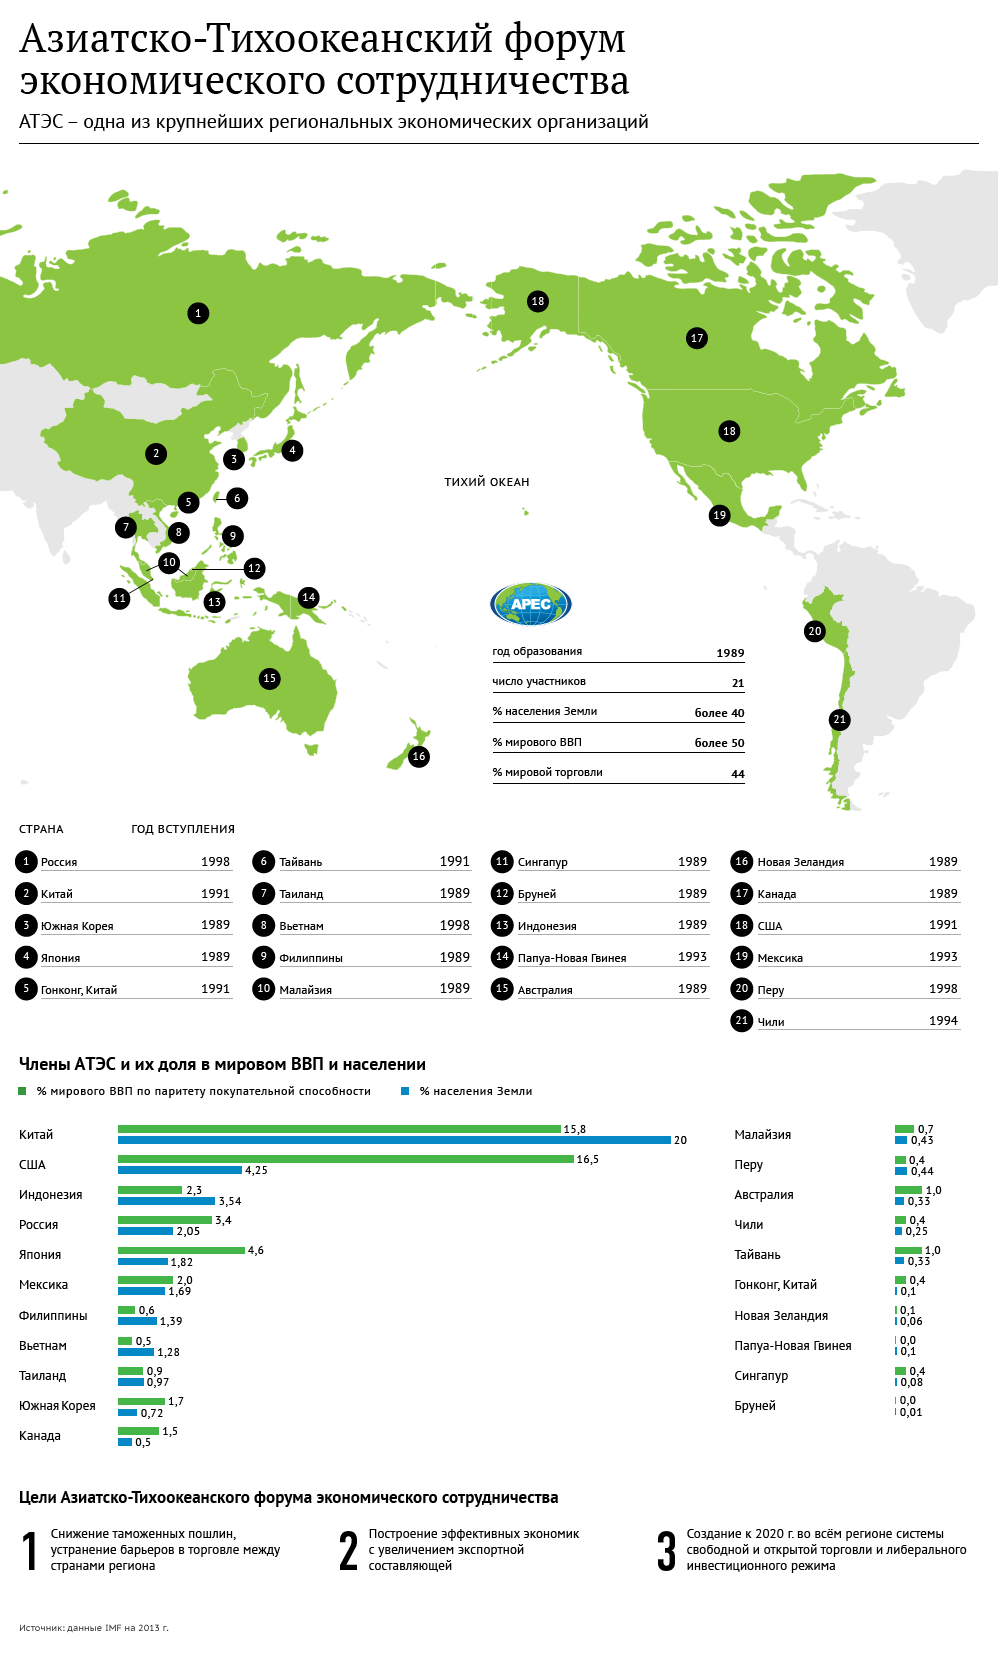 Азиатско-Тихоокеанский форумэкономического сотрудничества. Инфографика